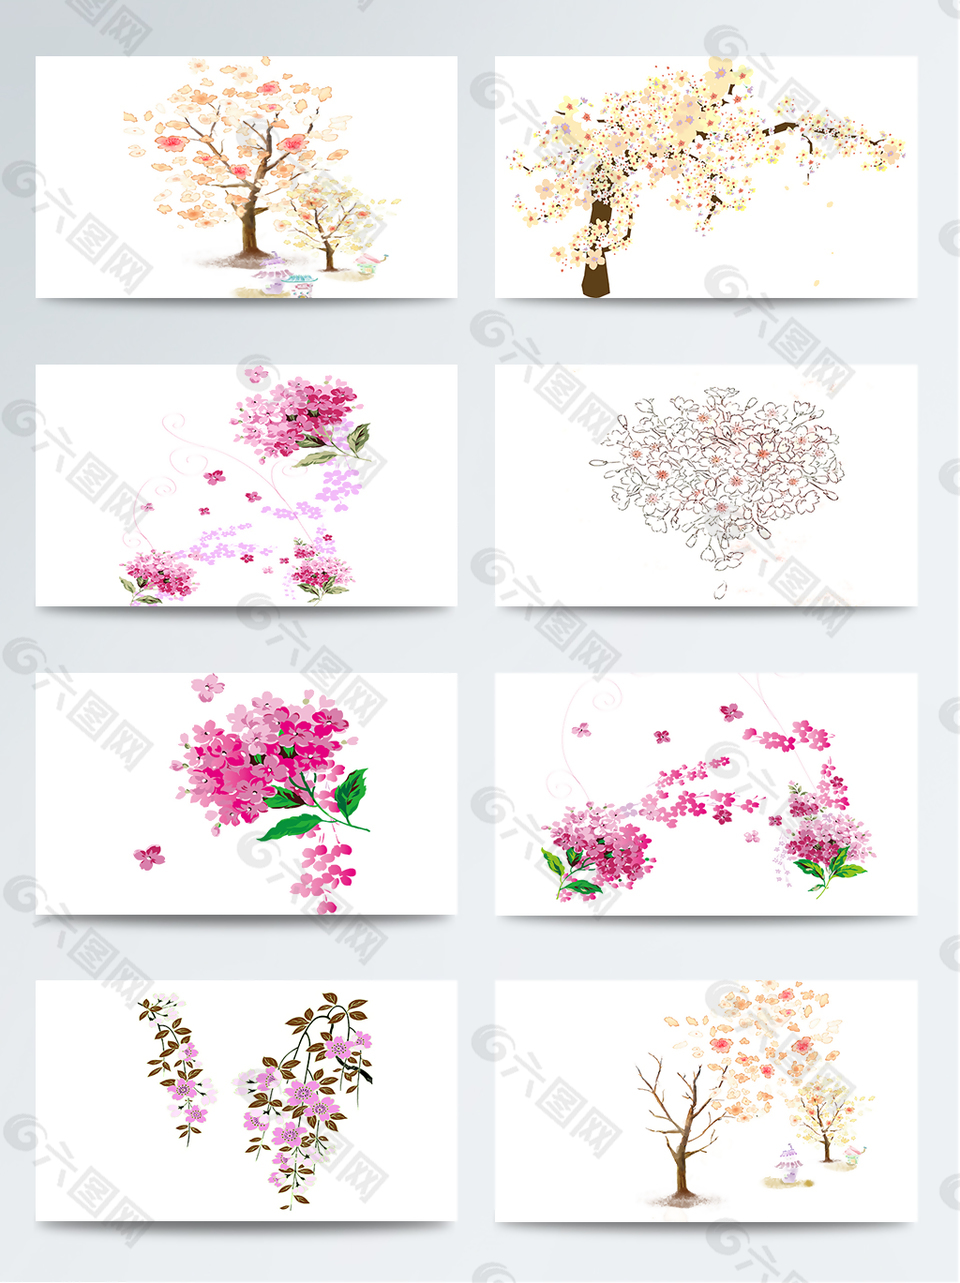 各种樱花树集合素材